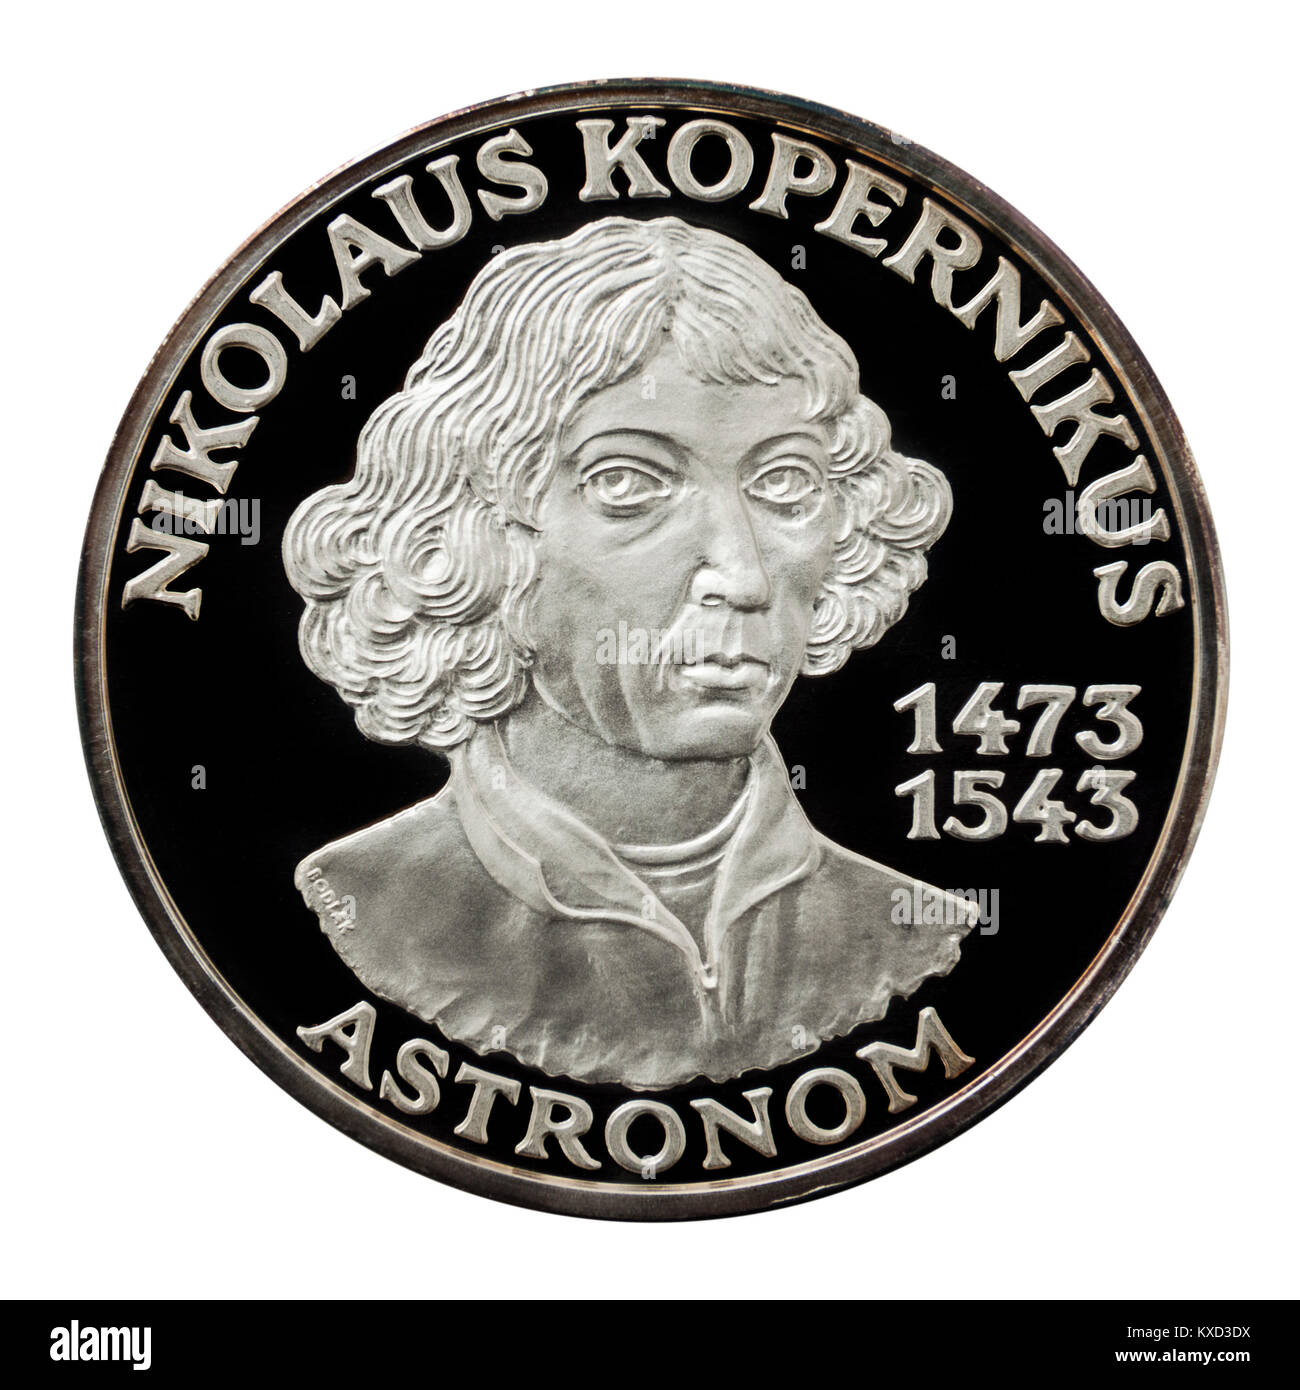 99,9% Beweis Silber Medaillon mit Nikolaus Kopernikus, dem berühmtesten polnischen Astronomen, Mathematiker und Wirtschaftswissenschaftler. Stockfoto